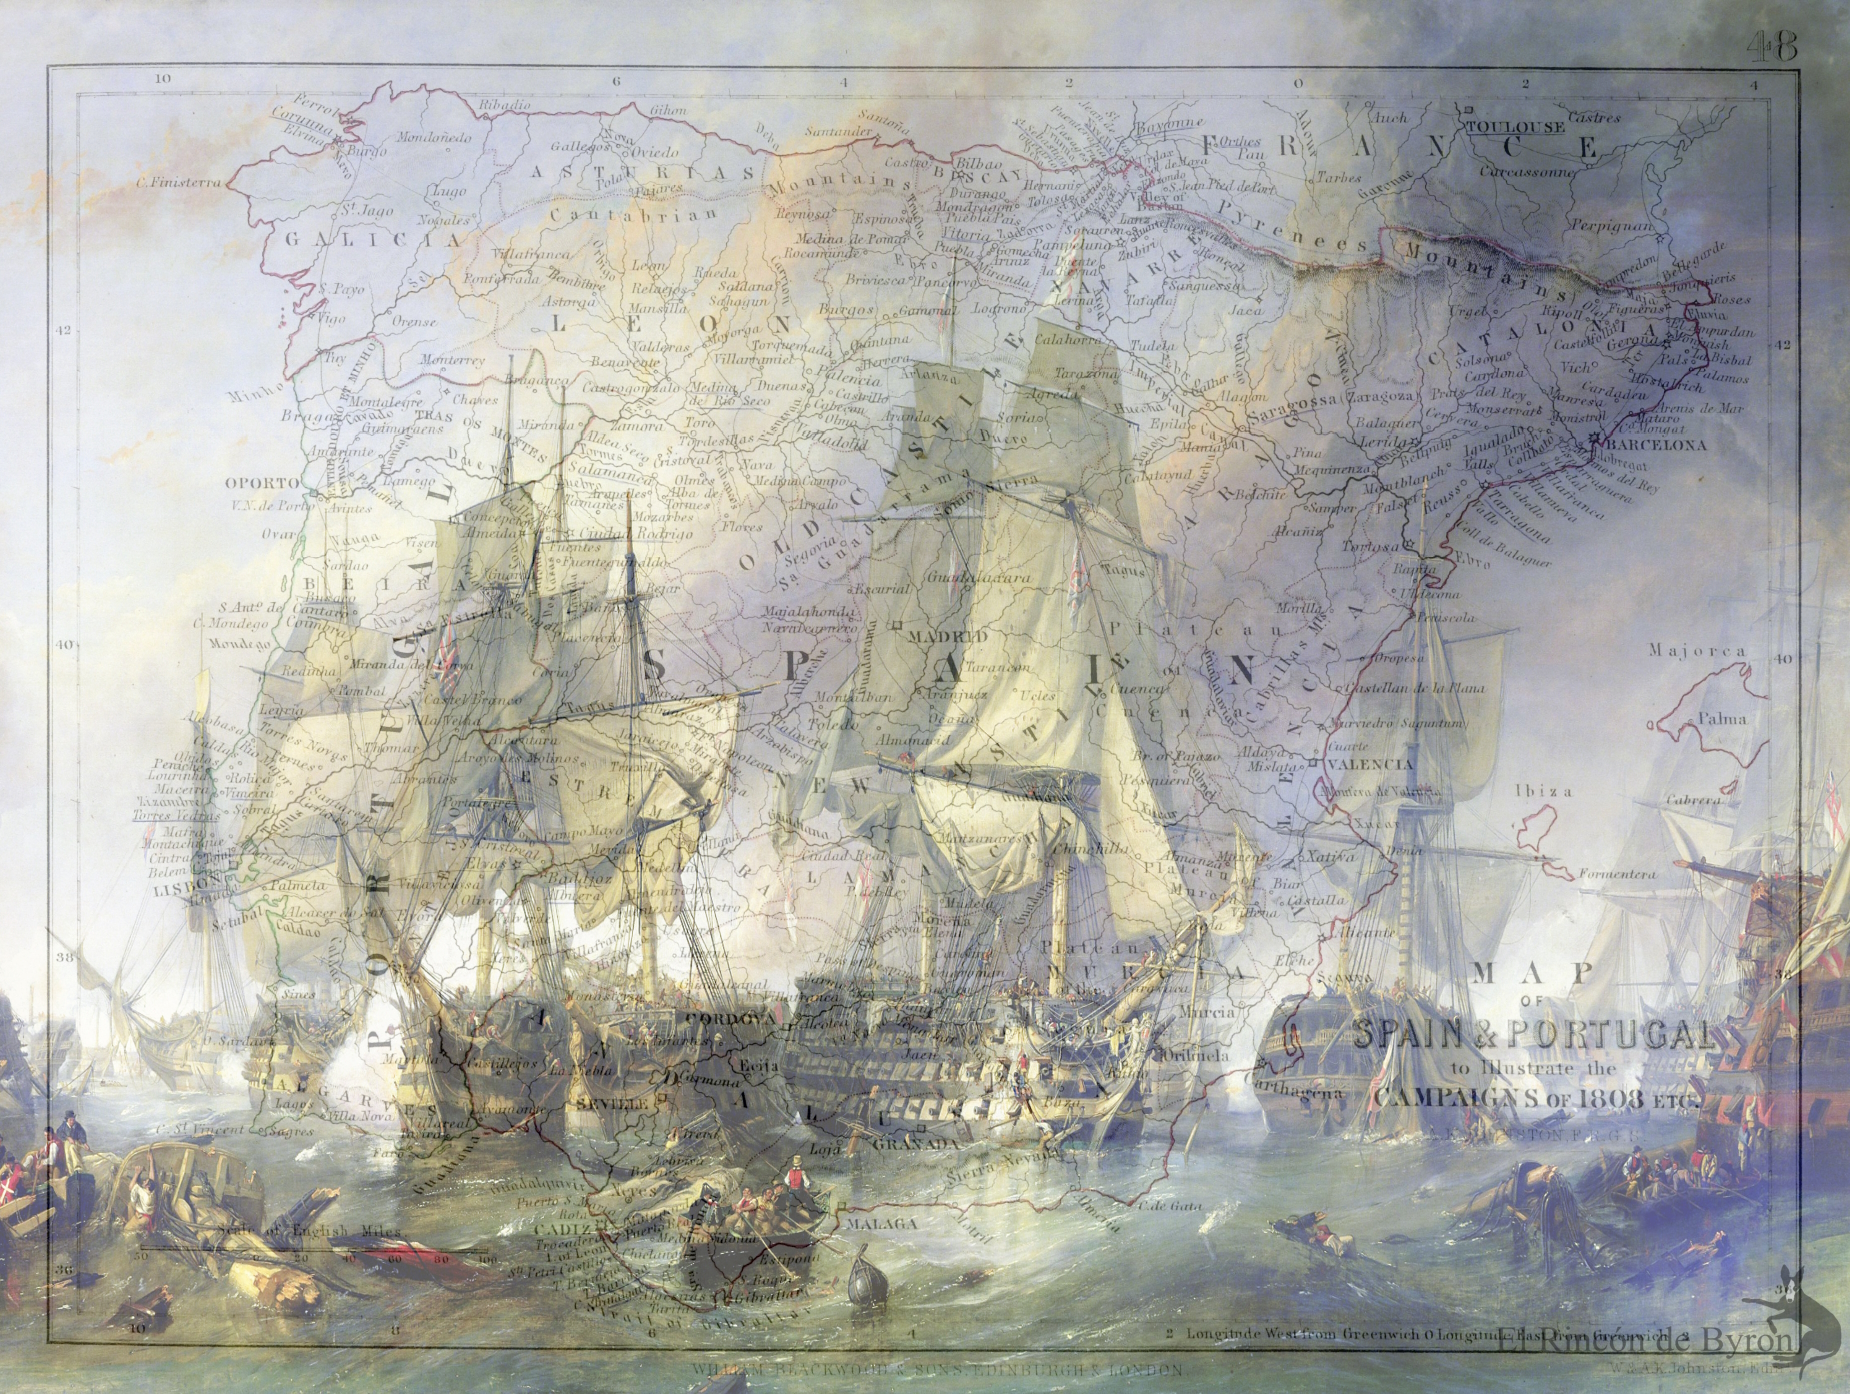 La Guerra Peninsular: La guerra marítima de Napoleón, por Kenneth G. Johnson